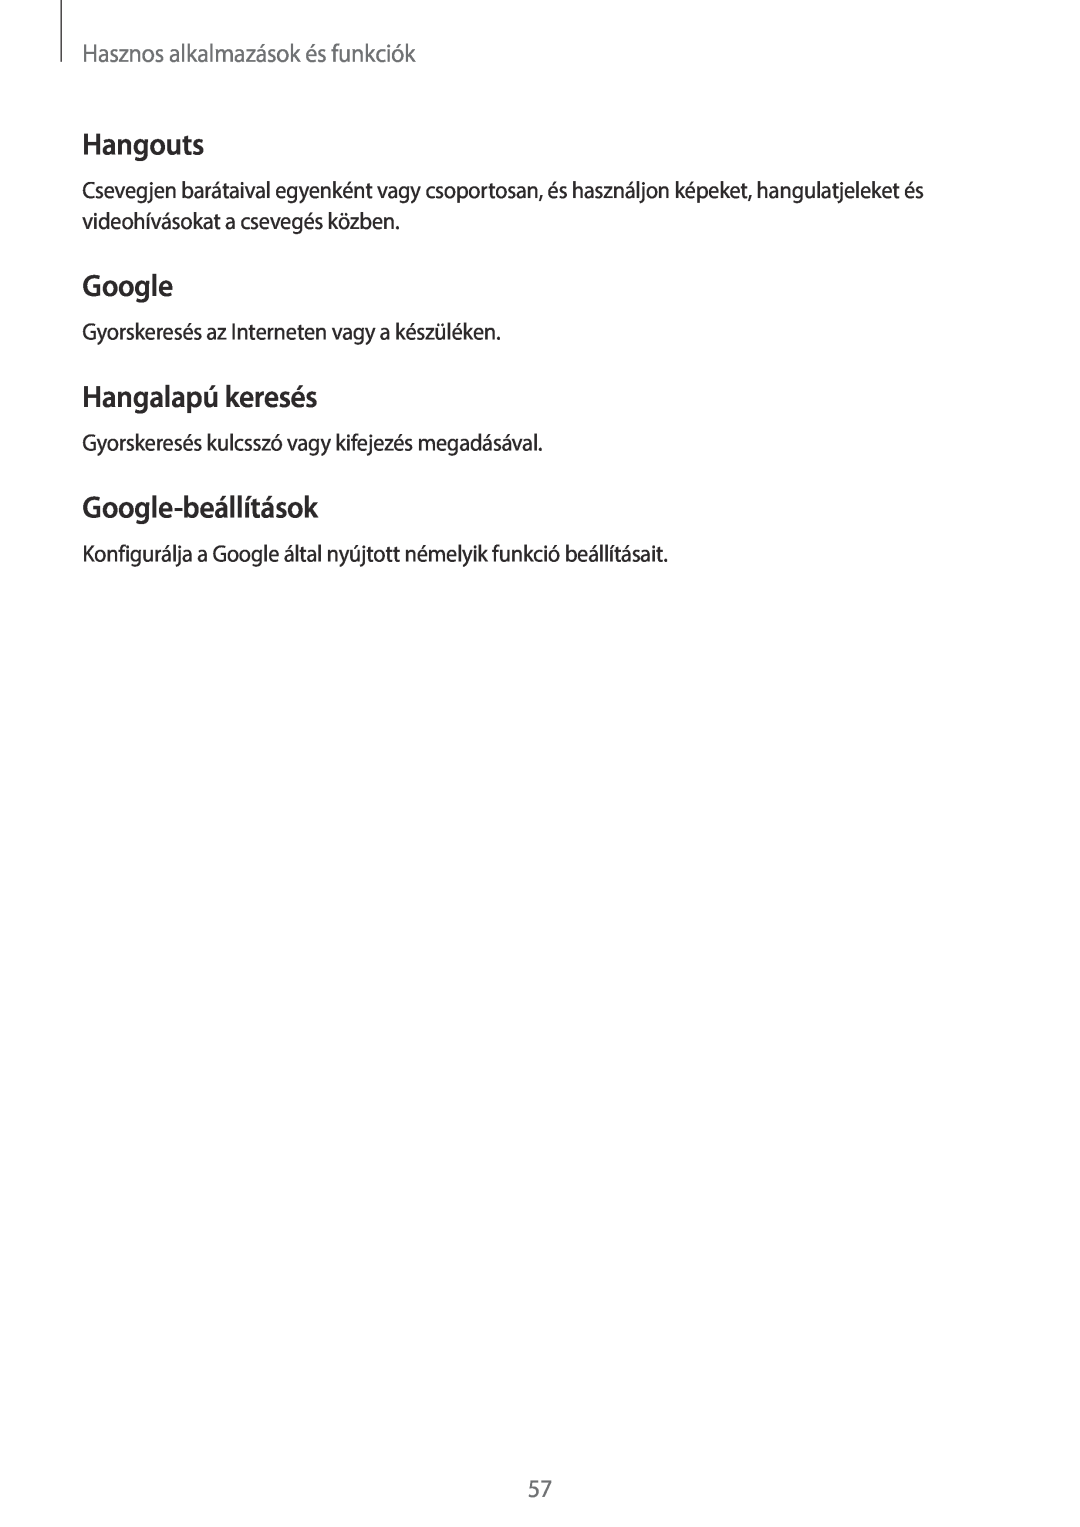 Samsung SM-T113NYKAXSK manual Hangouts, Hangalapú keresés, Google-beállítások, Hasznos alkalmazások és funkciók 